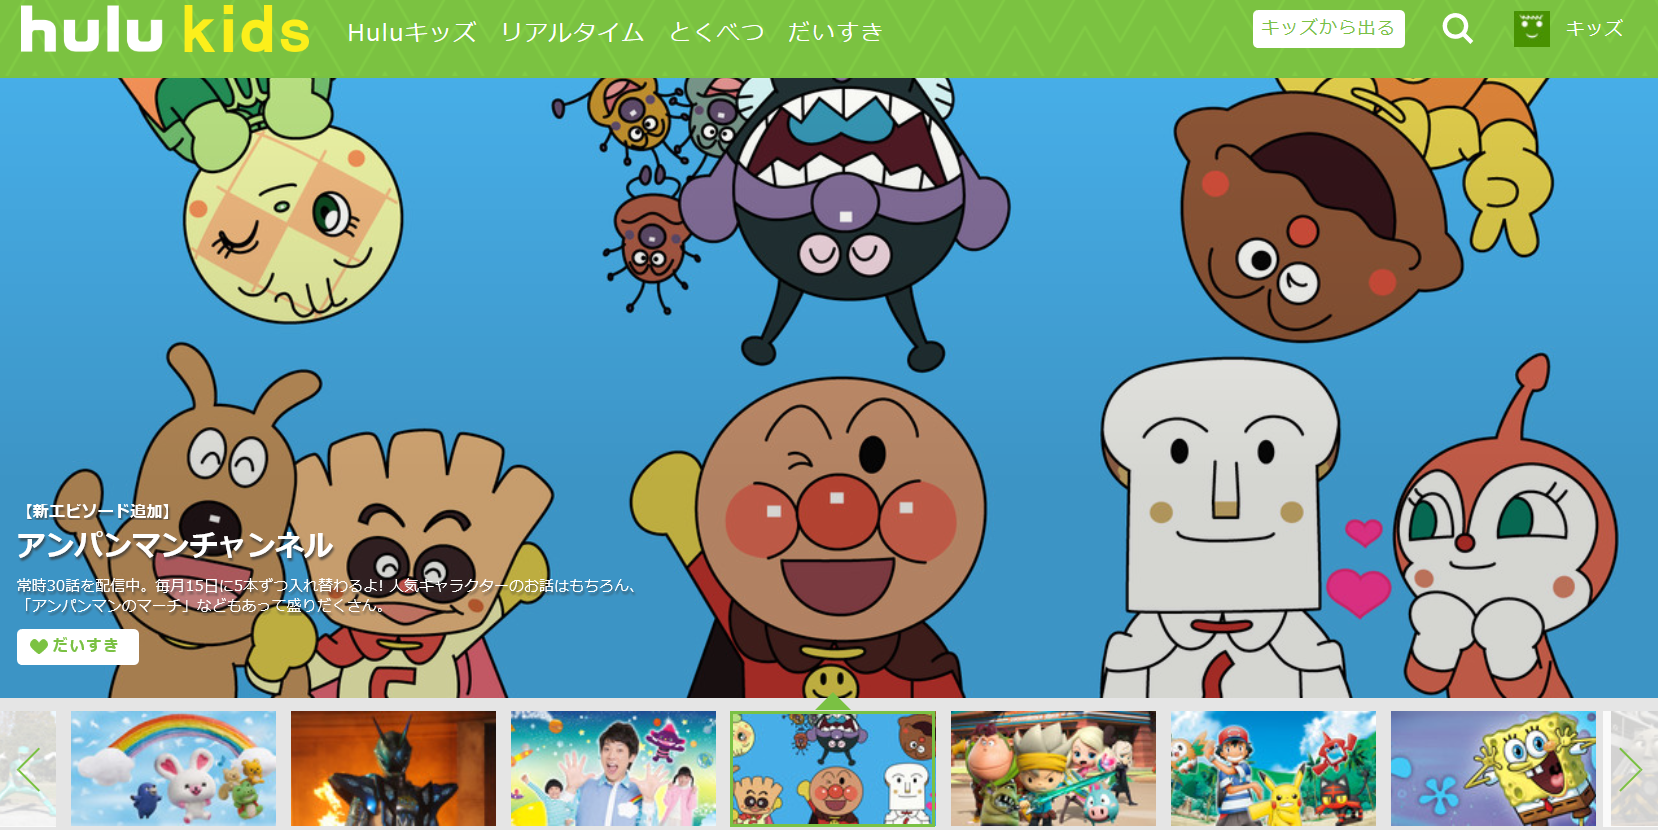 hulu フールー で視聴できる子供向けのおすすめキッズアニメ lovekach ラブカチャンネル